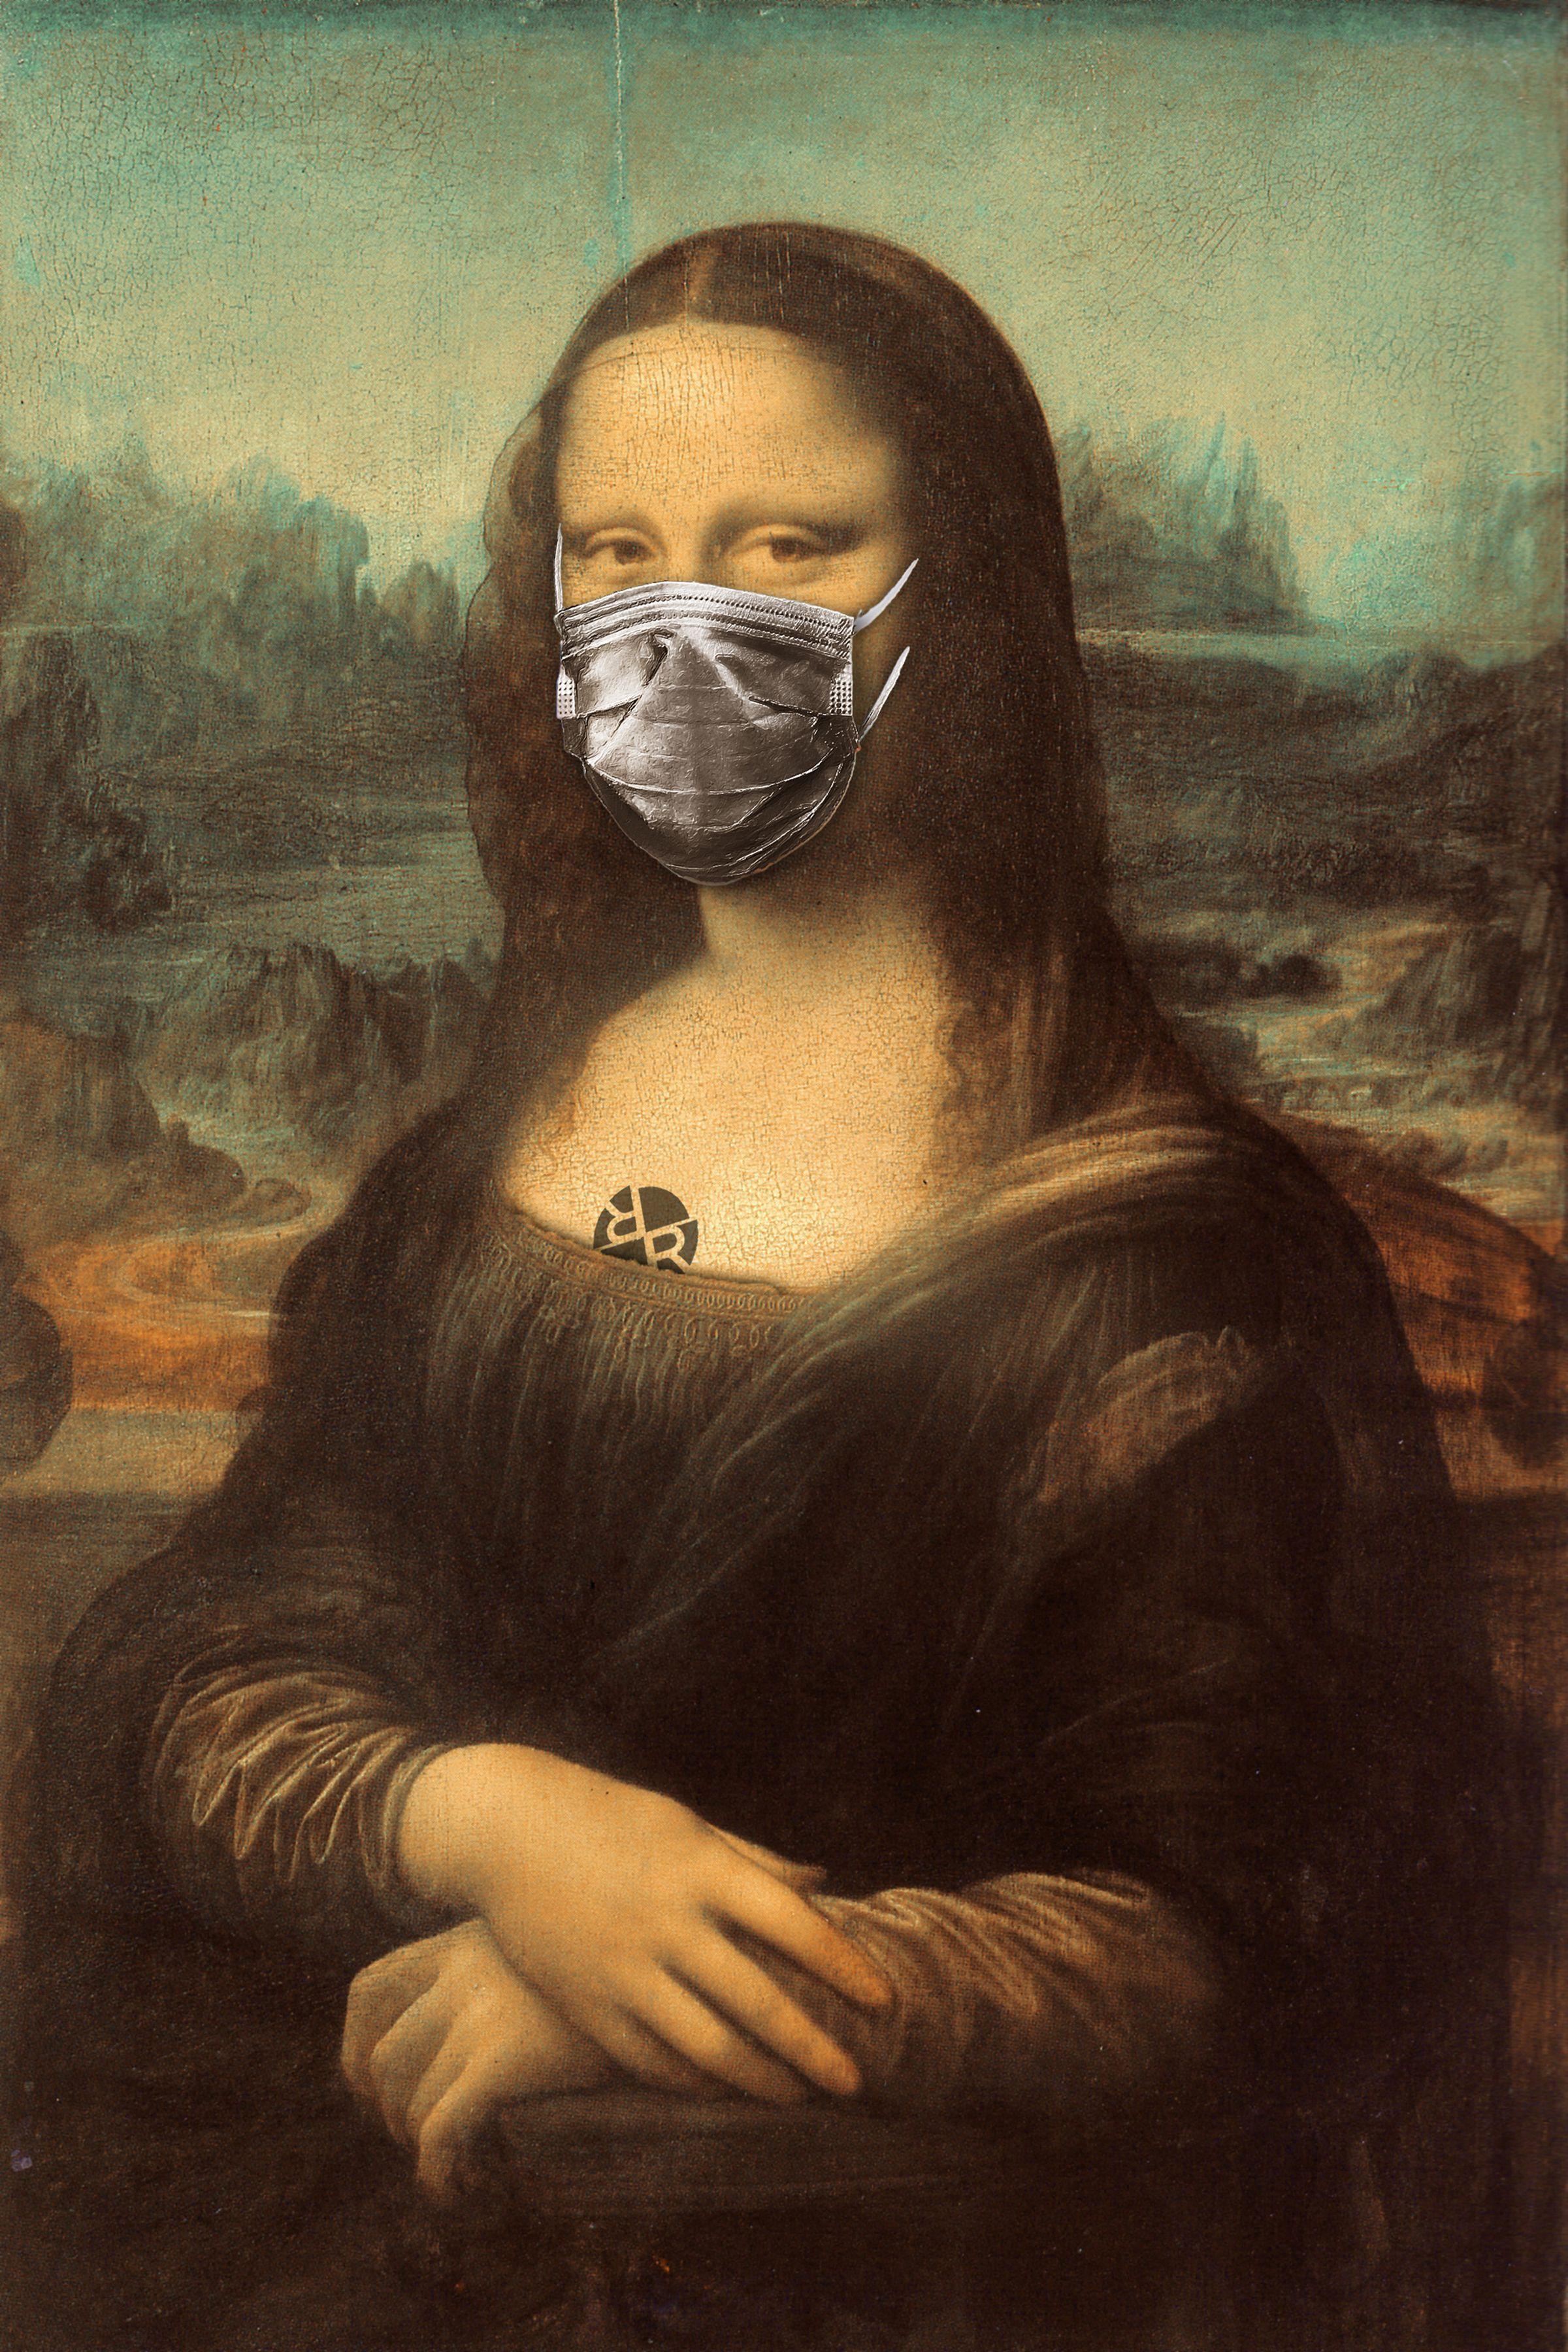 Mona Lisa Corona Virus, Mixed Media on Canvas - Mixed Media Art by Tony Rubino